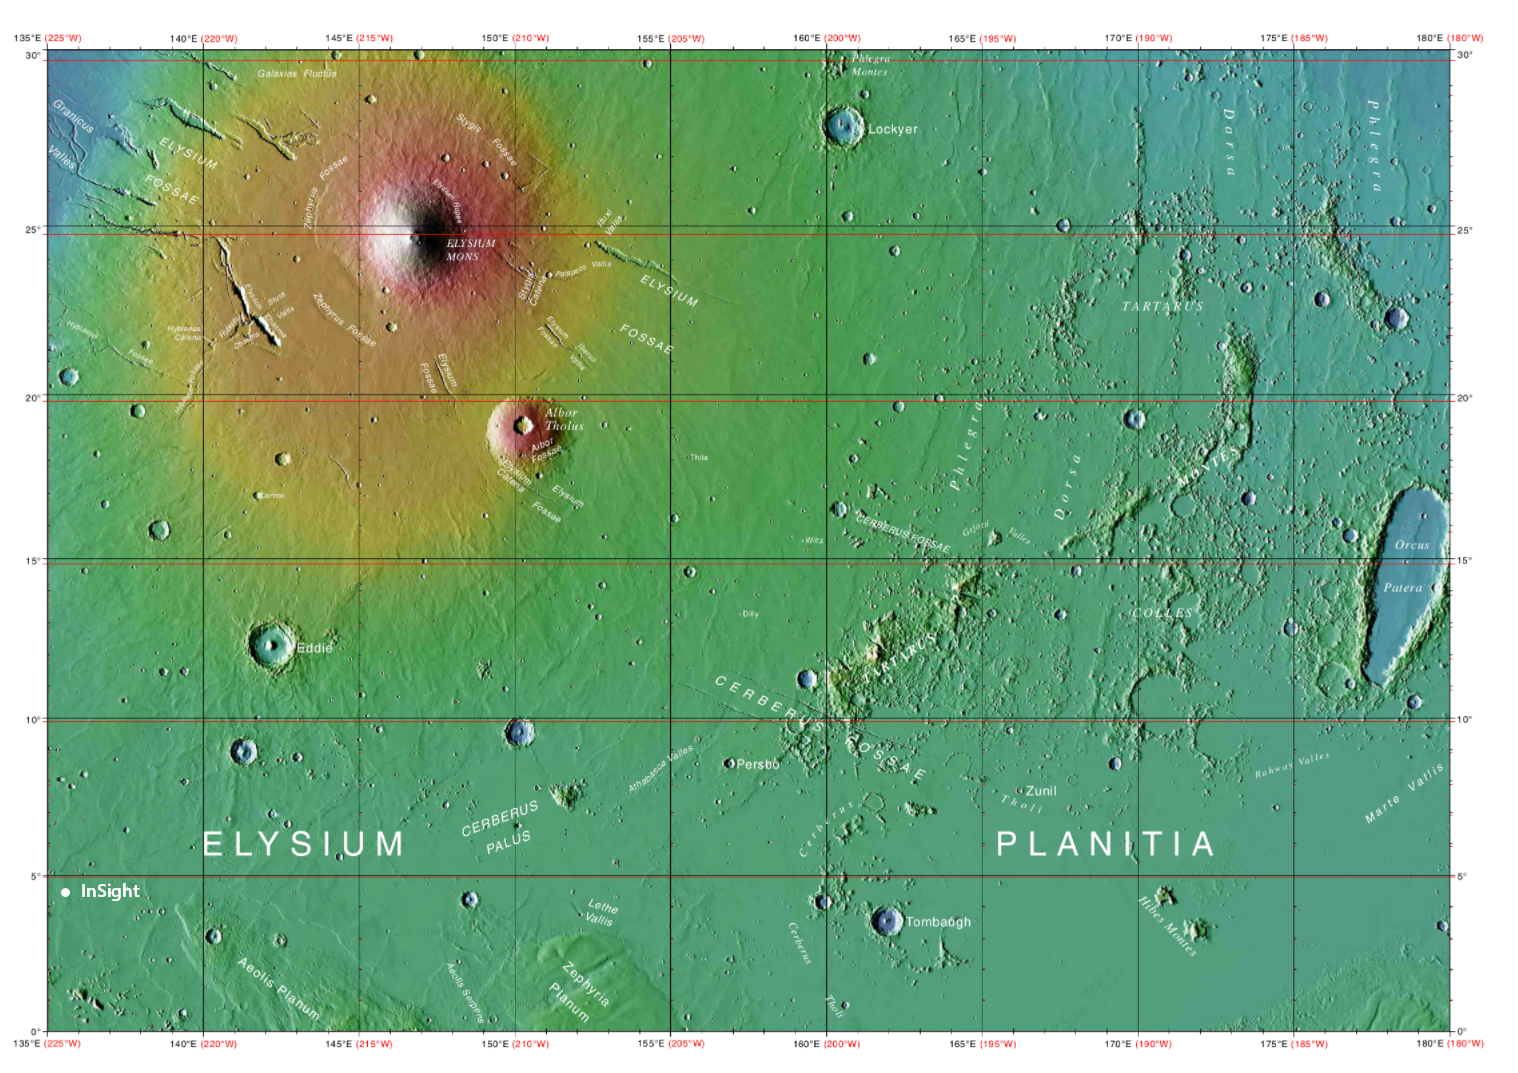 A Mars Elysium régiójának magasság szerint színezett térképe. Északon az Elysium Mons vulkán magasodik, tőle dél nyugatra pedig a Cerberus Fossae tektonikus-vulkáni hasadékvölgy. A NASA InSight-űrszondája a térkép bal alsó sarkában landolt, az Elysium Planitia síkságon.